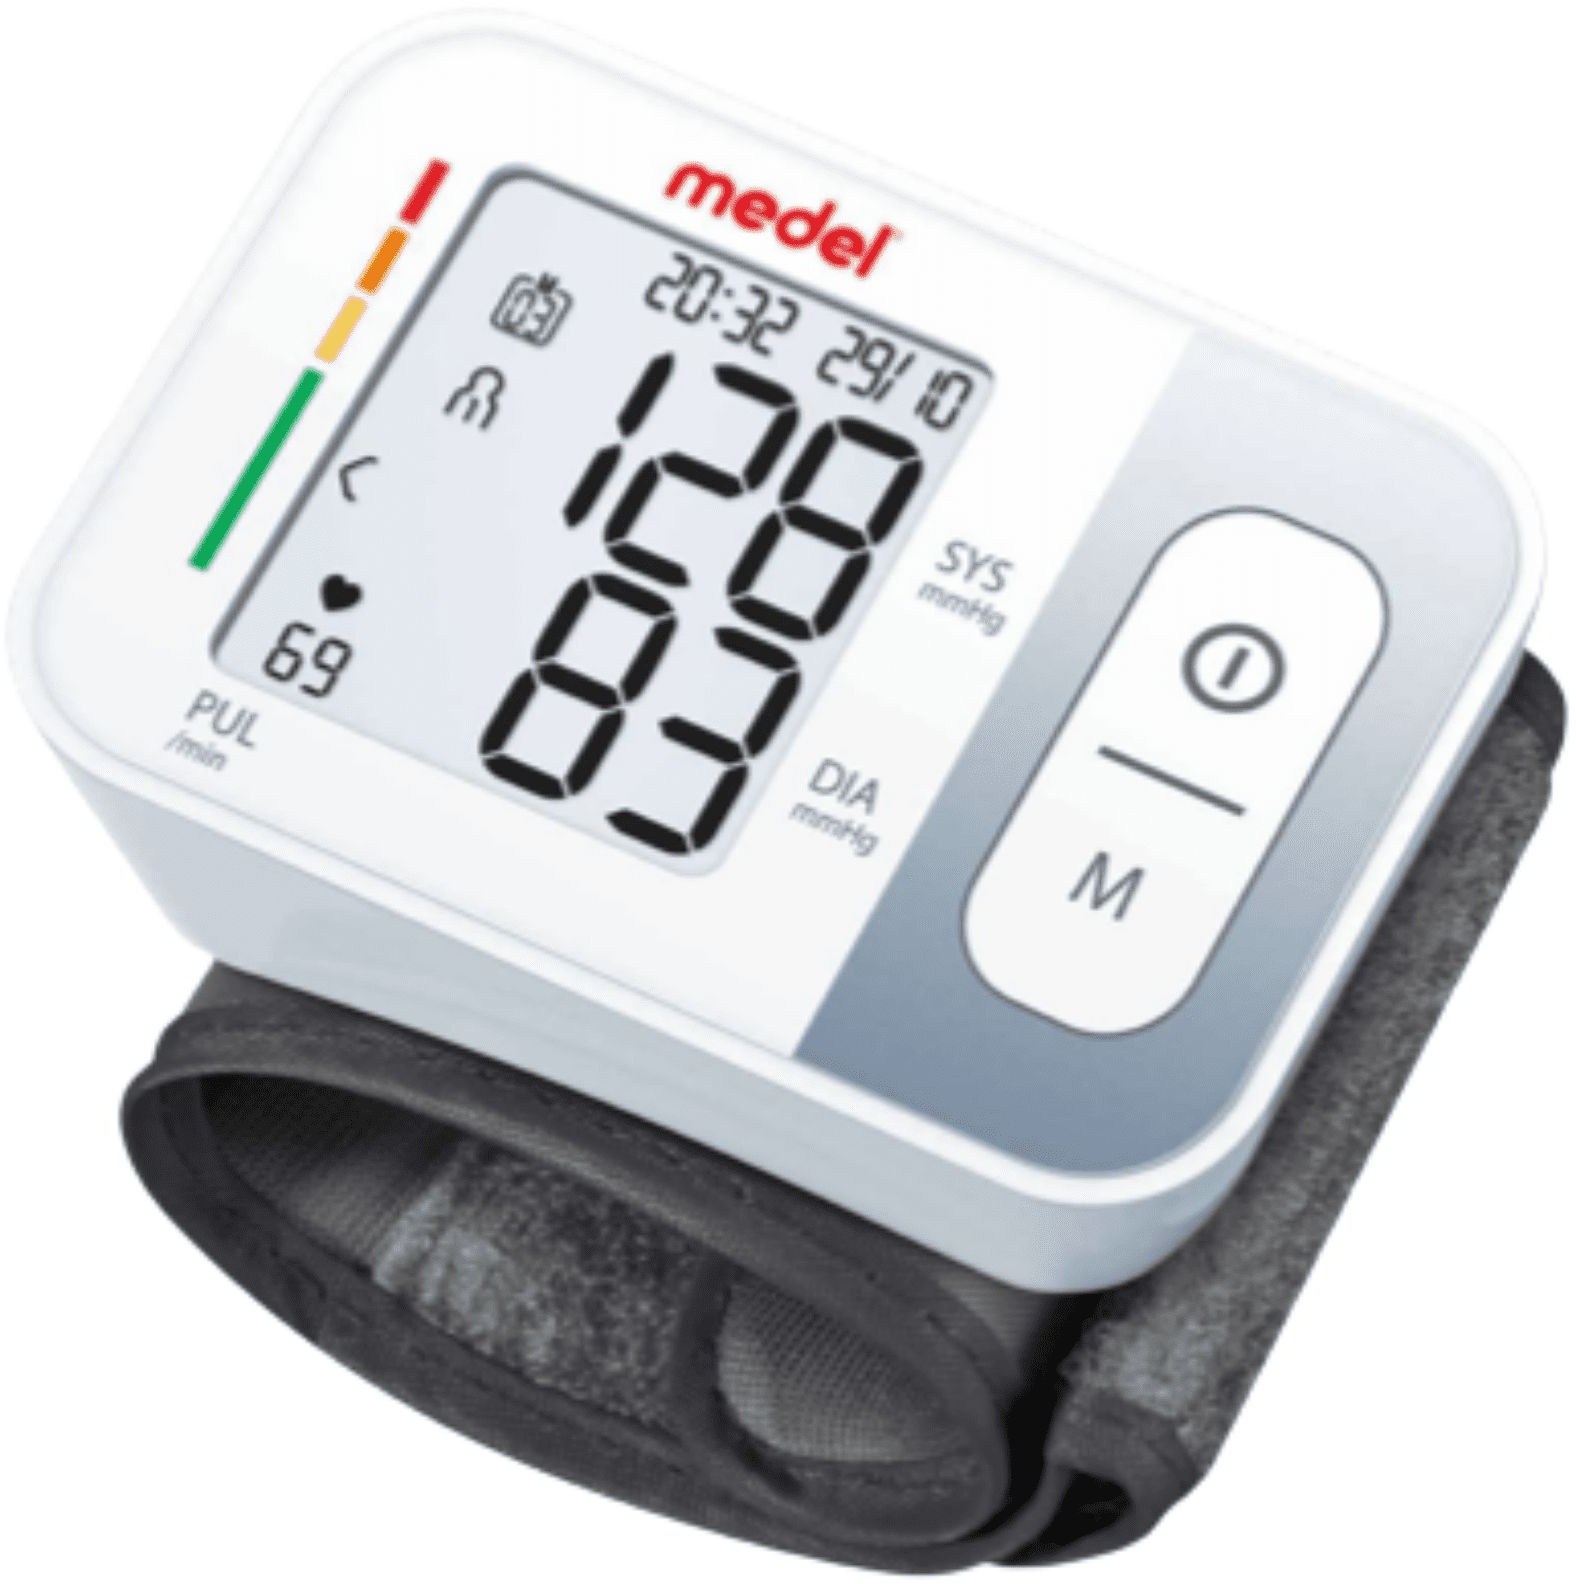 Medel Quick Handgelenk-Blutdruckmessgerät Kombipackung 1 St